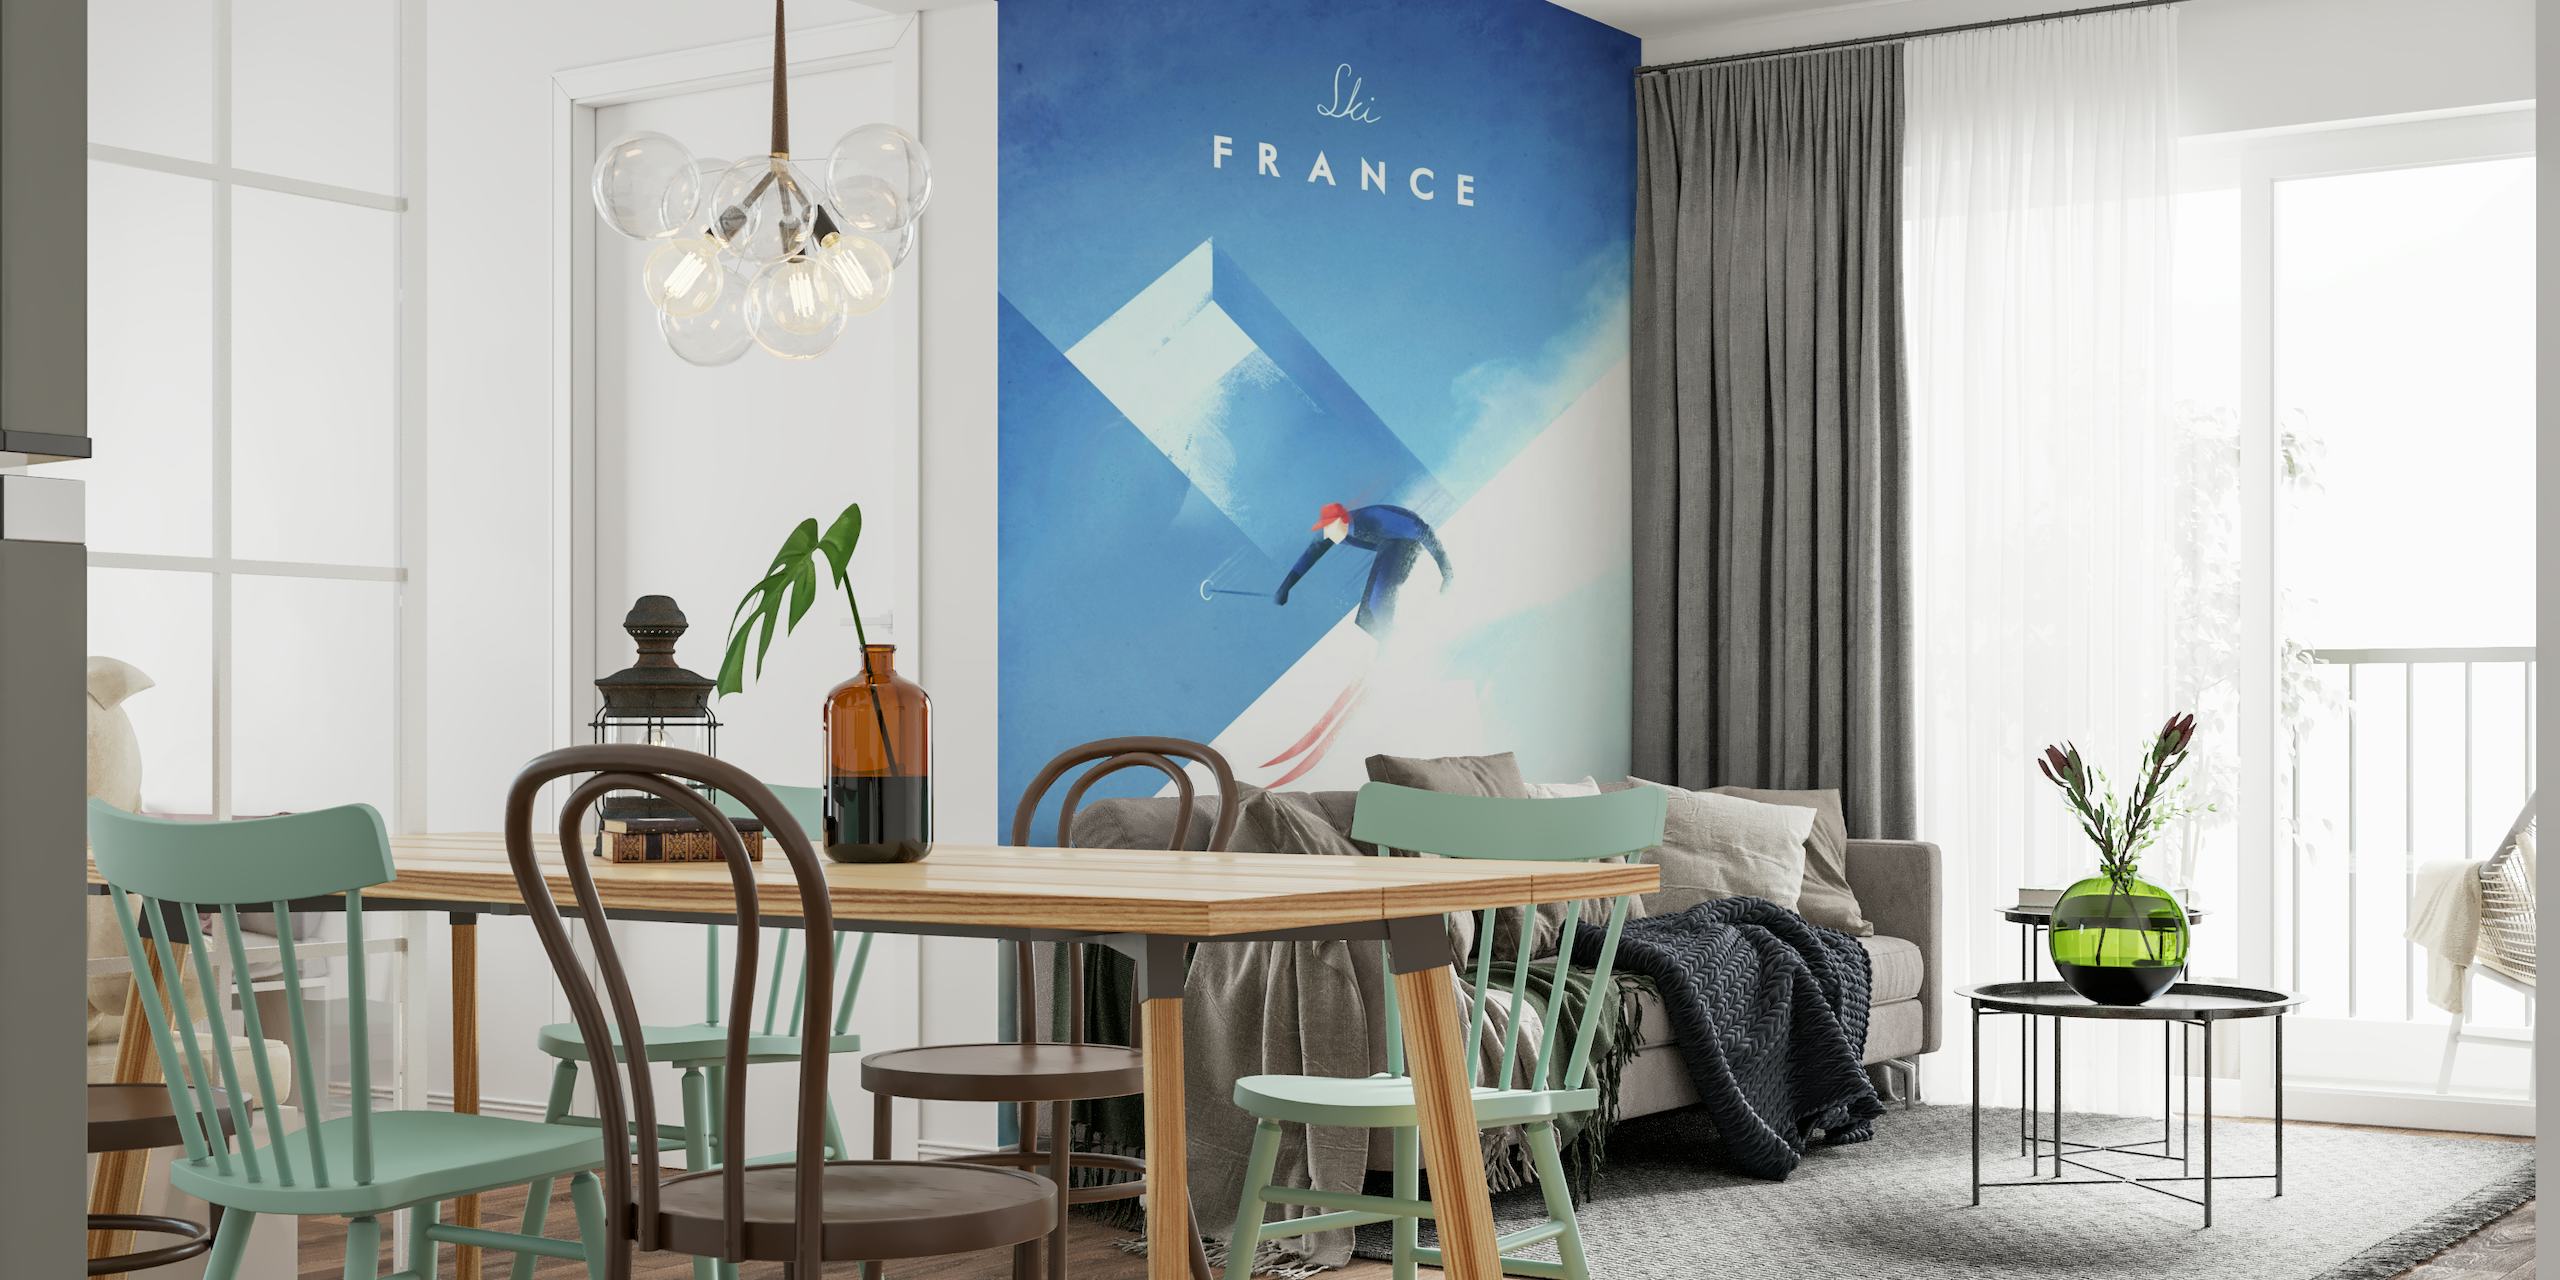 Ski France Travel Poster tapete